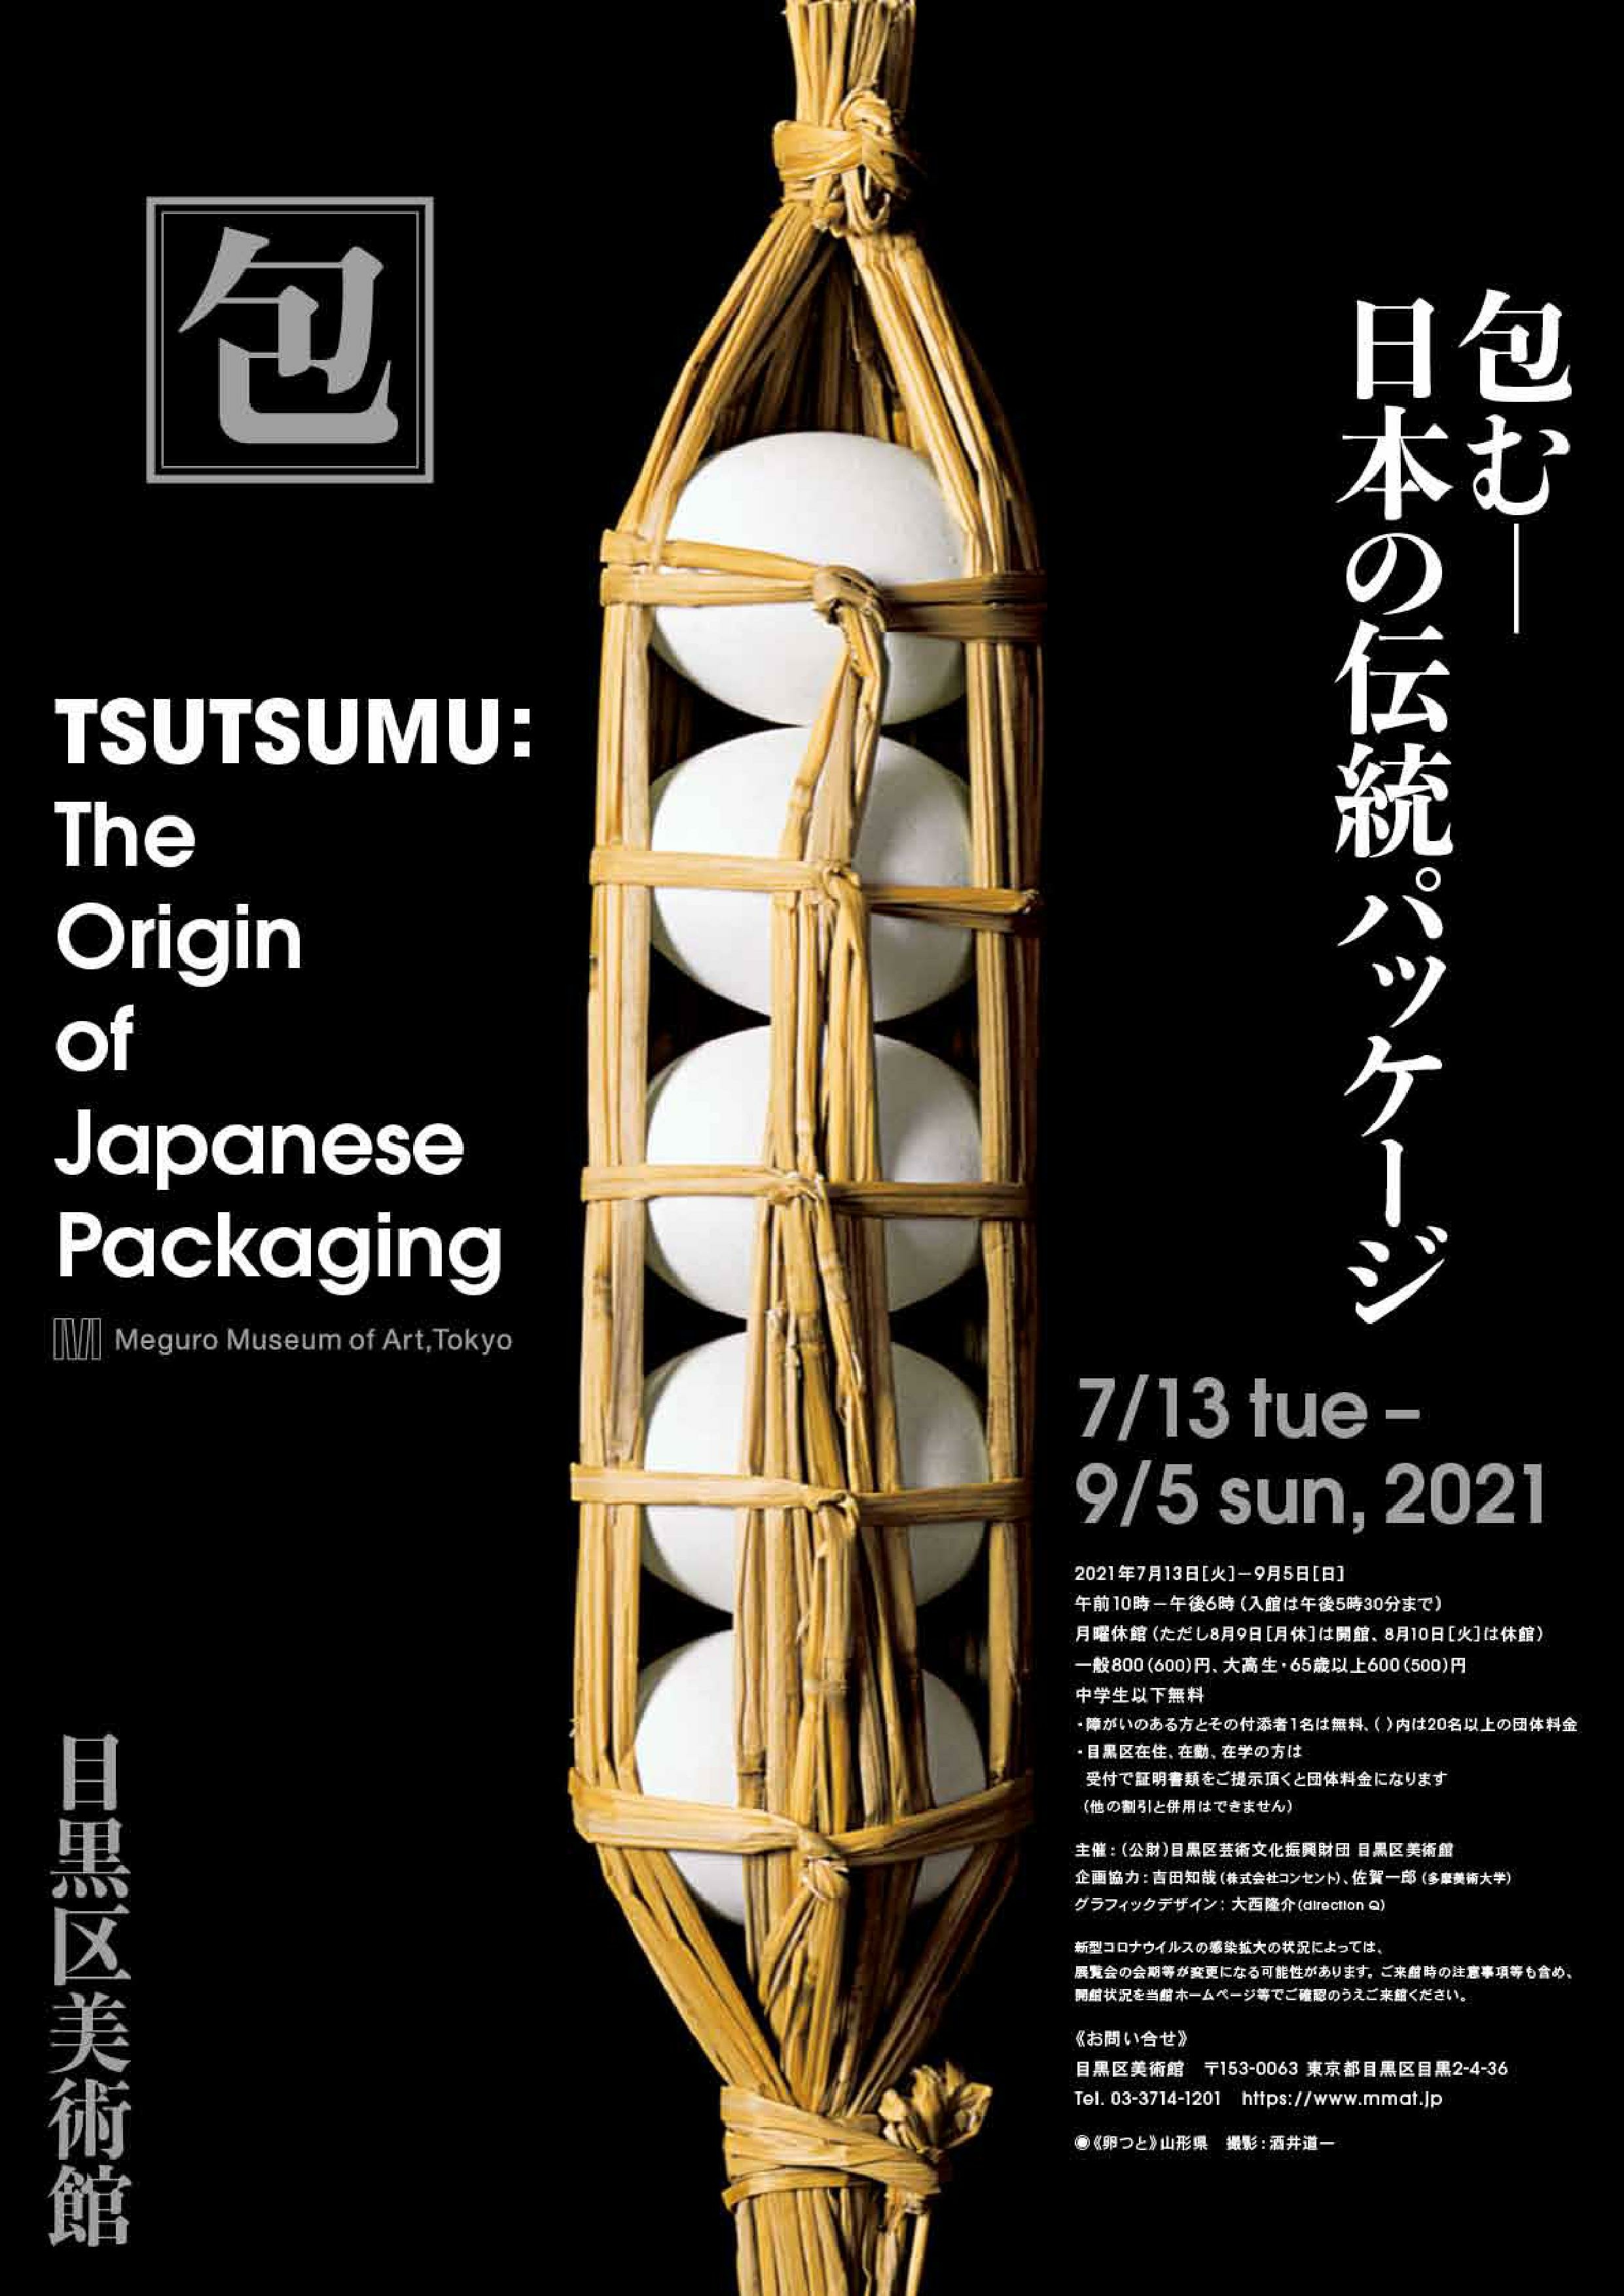 包む－日本の伝統パッケージ 目黒区美術館 | 灸まん美術館